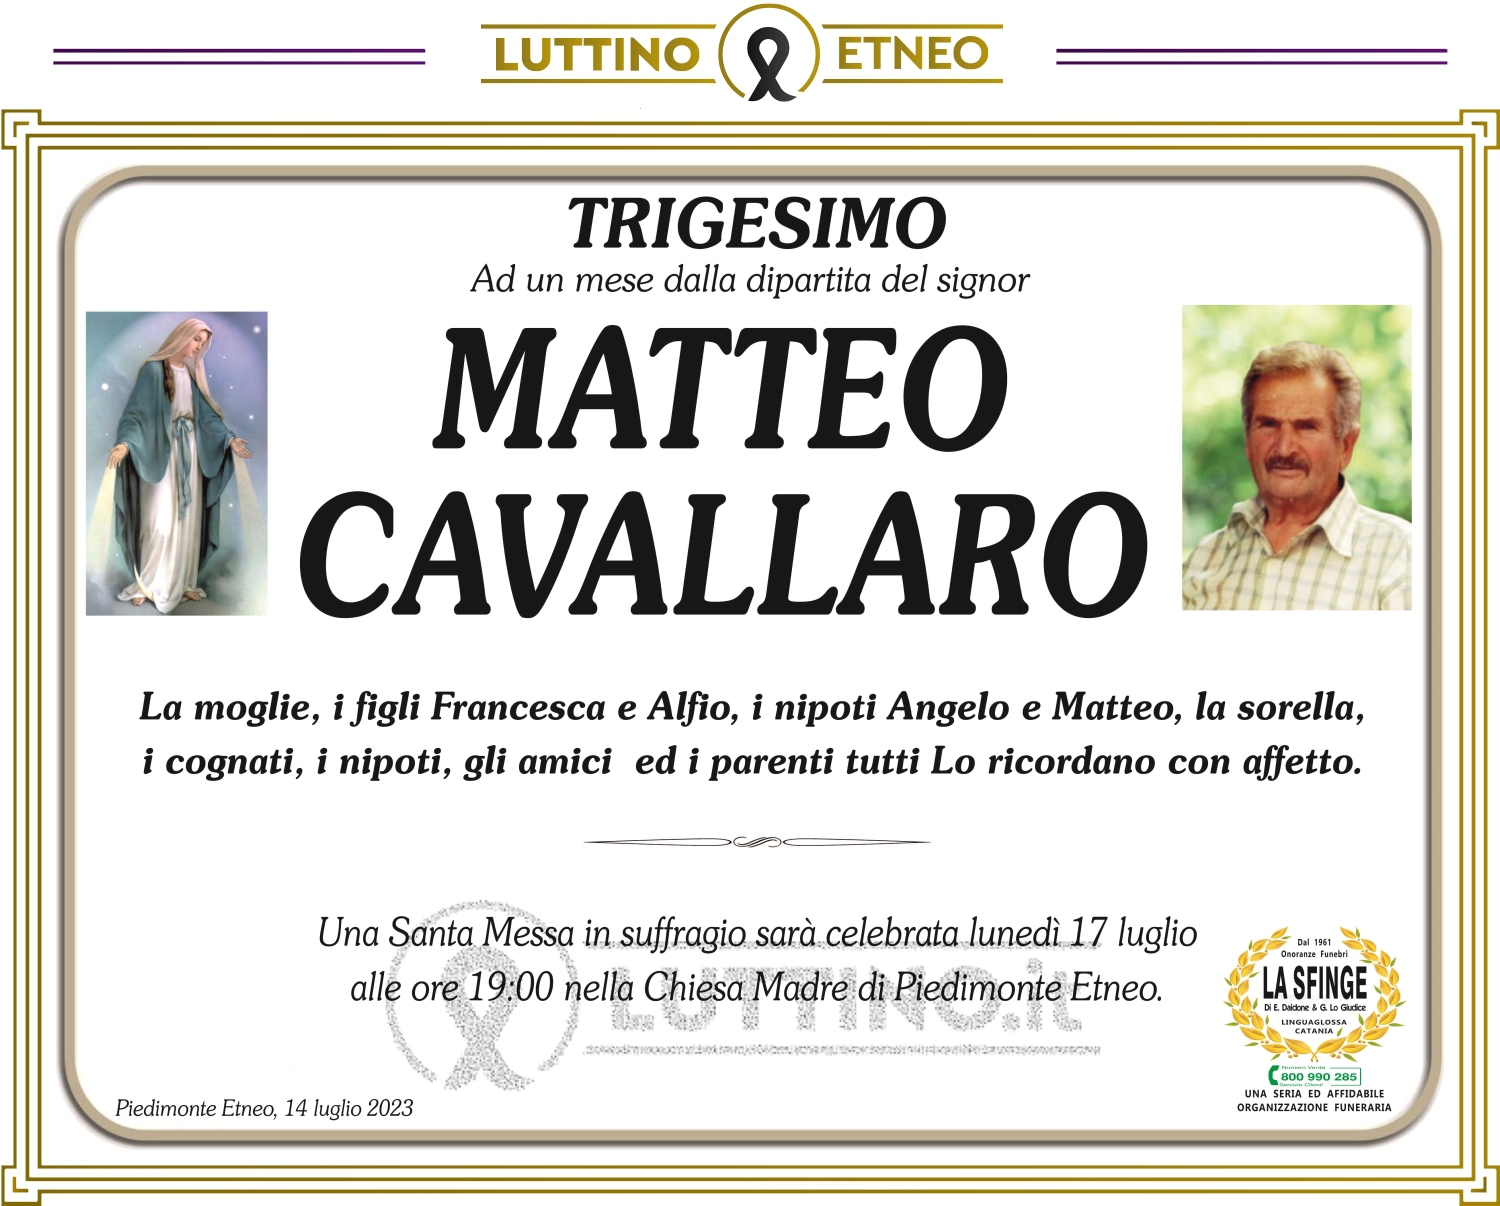 Matteo Cavallaro